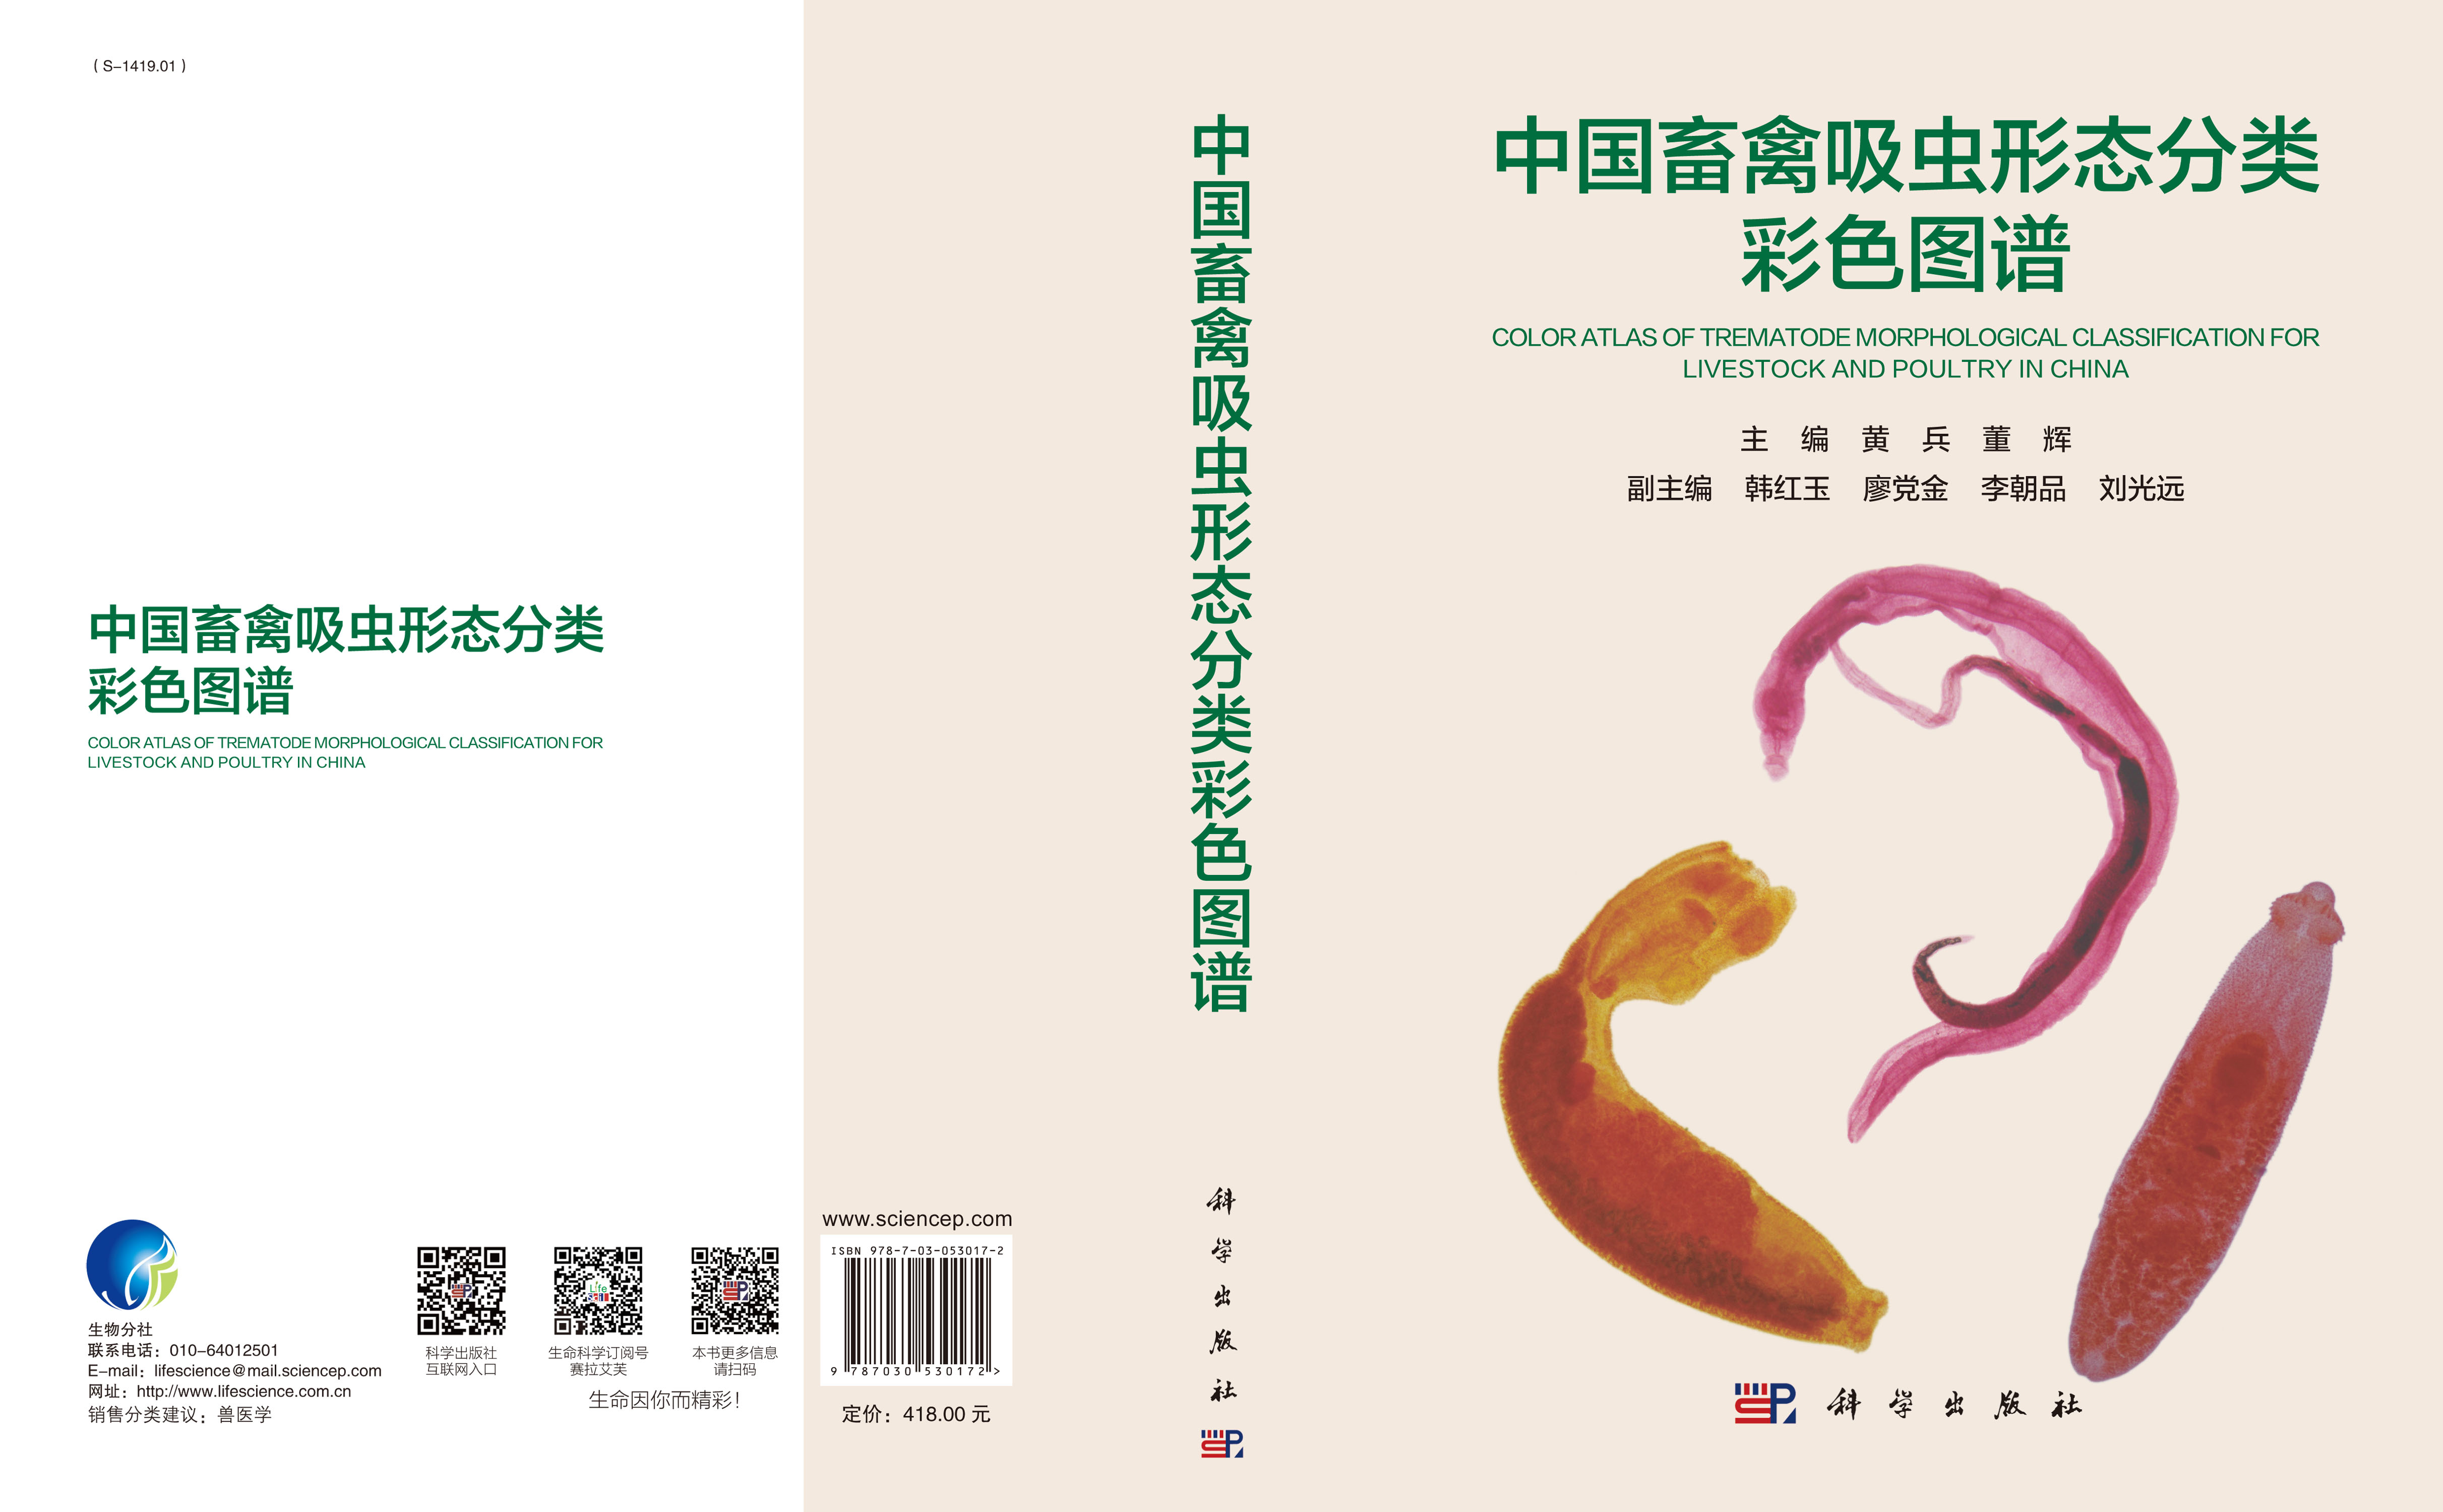 中国畜禽吸虫形态分类彩色图谱